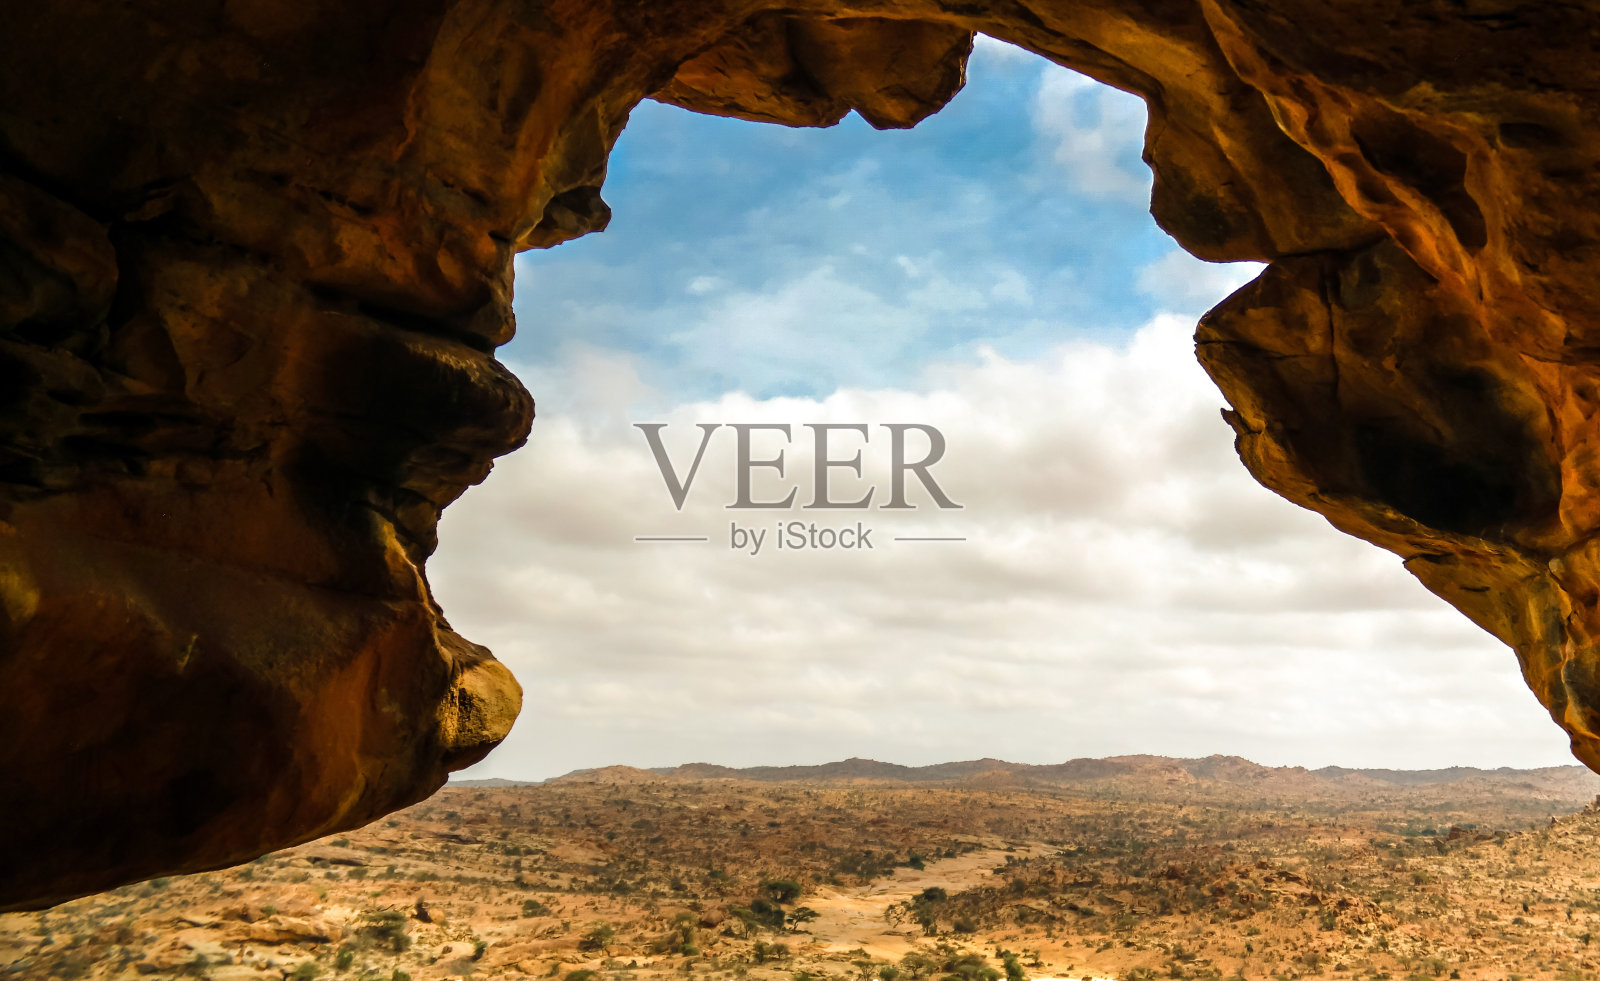 索马里哈尔格萨附近的洞穴Laas Geel岩石内部照片摄影图片